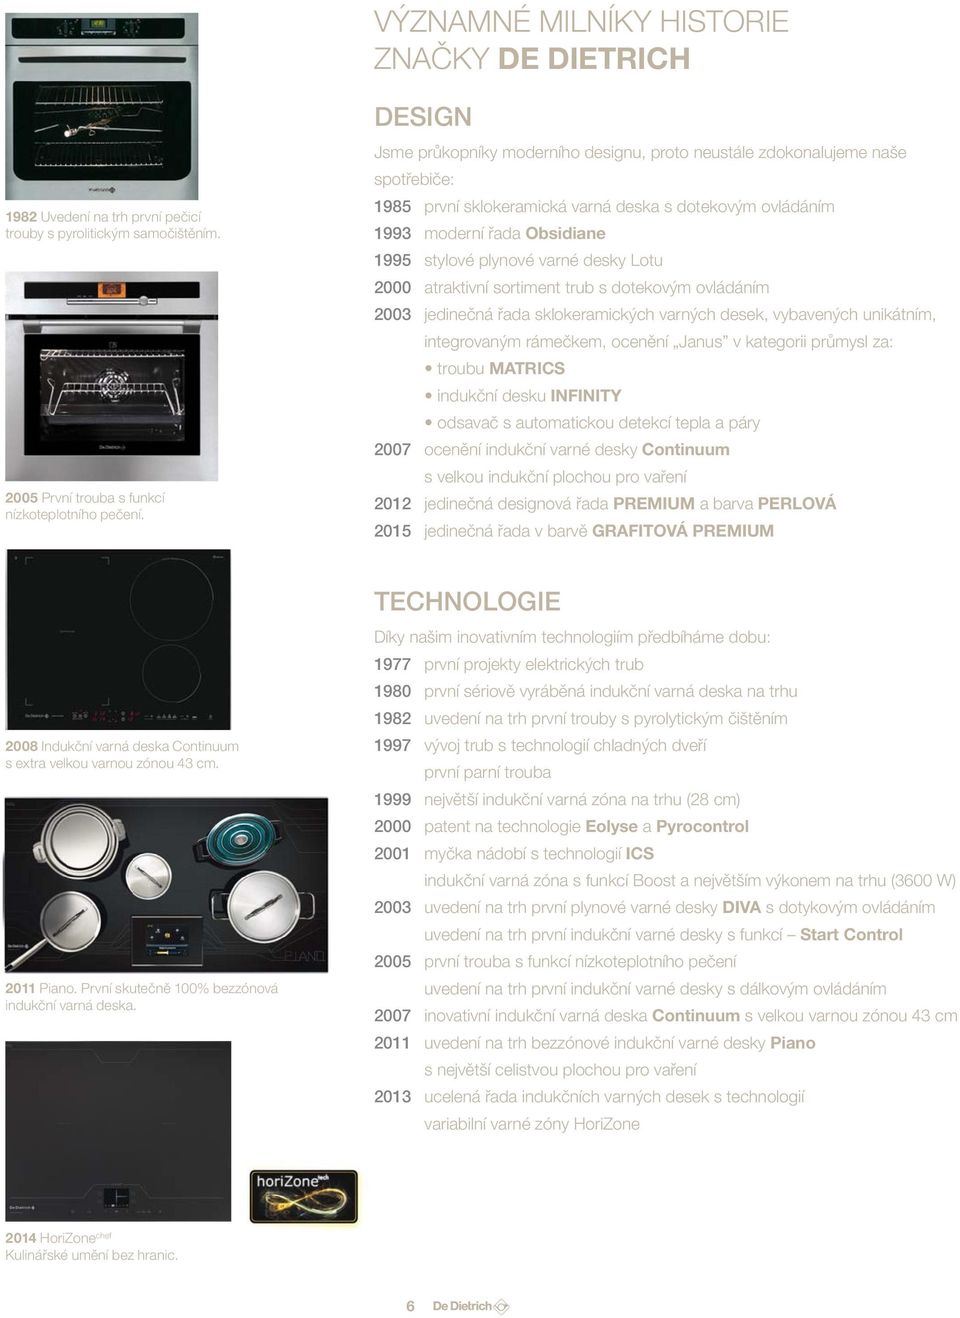 varné desky Lotu 2000 atraktivní sortiment trub s dotekovým ovládáním 2003 jedinečná řada sklokeramických varných desek, vybavených unikátním, integrovaným rámečkem, ocenění Janus v kategorii průmysl